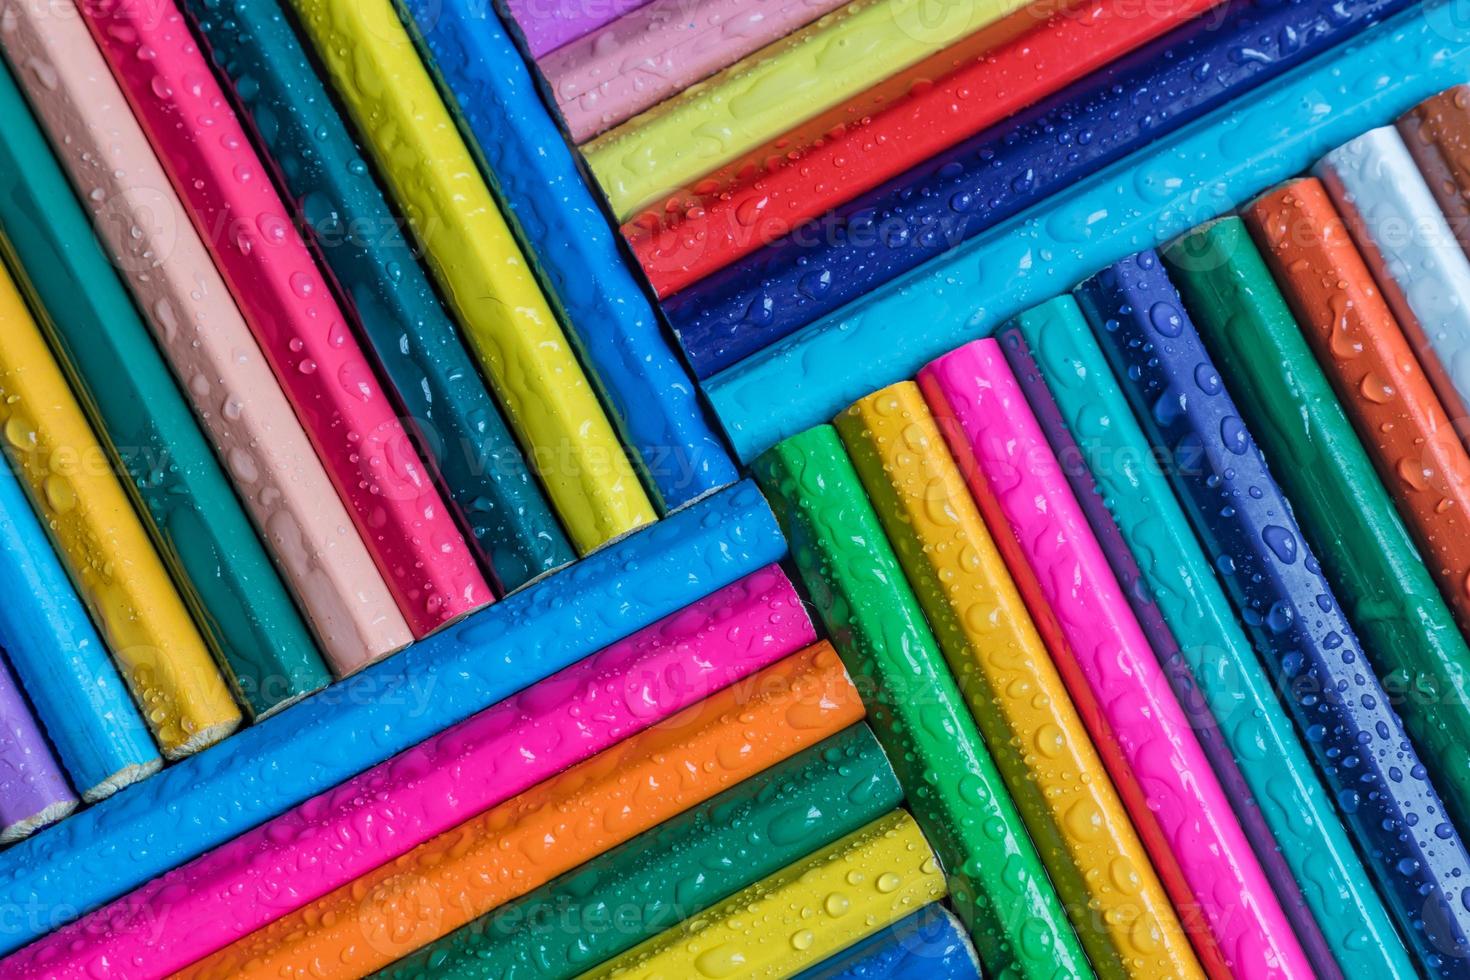 sfondo di matite colorate con goccia d'acqua foto